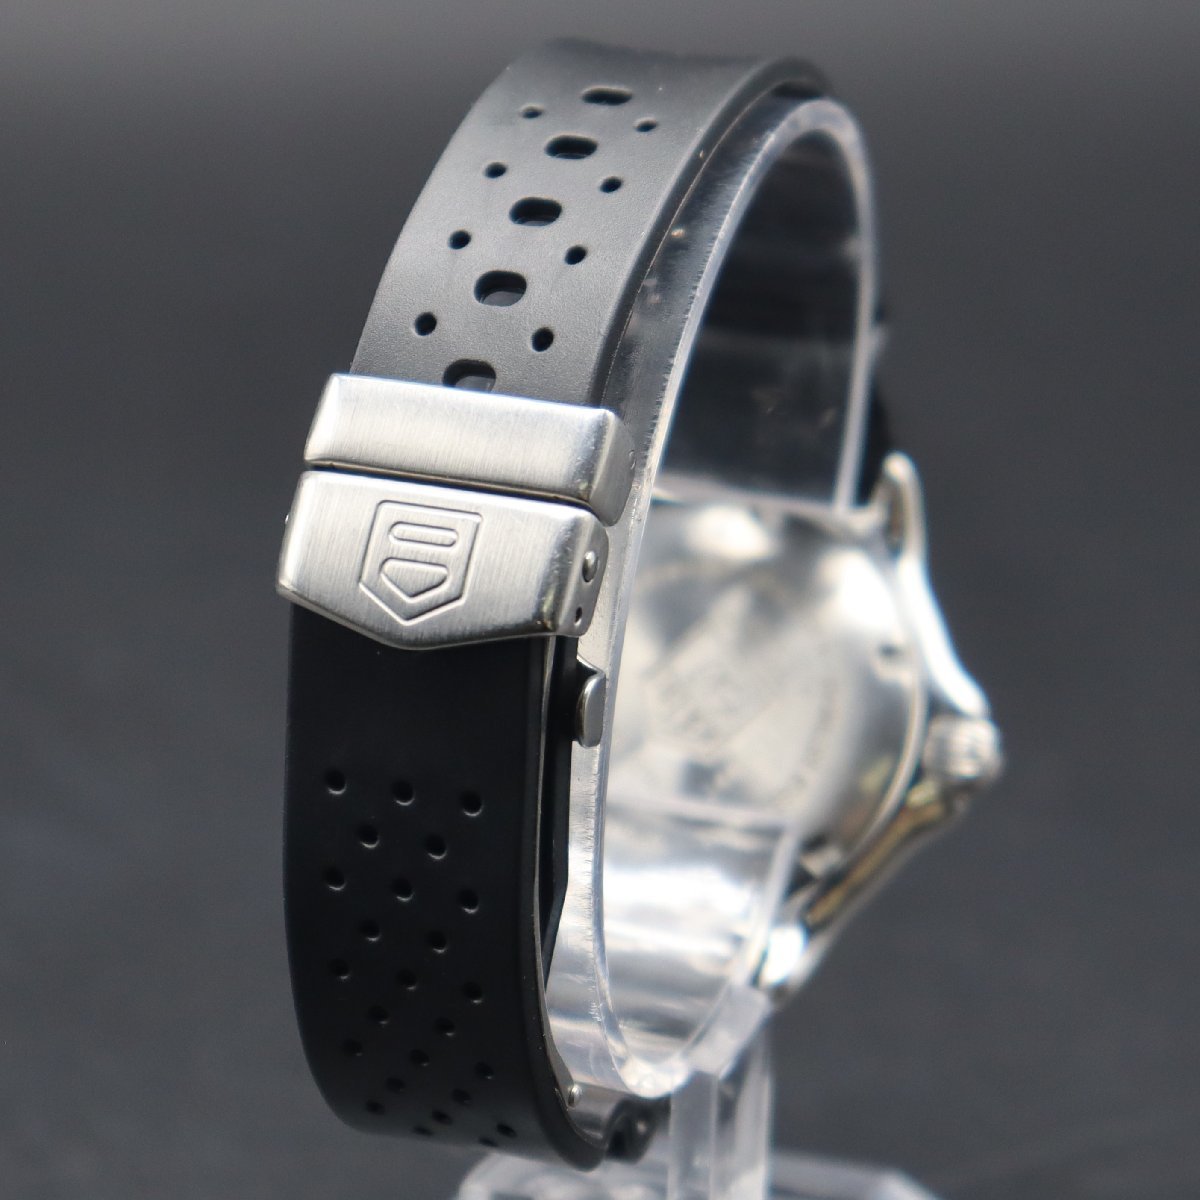 OH済 TAG HEUER タグホイヤー セルシリーズ 200M防水 WI2210 白文字盤 自動巻 デイト 新品ラバーベルト&純正バックル メンズ腕時計_画像5